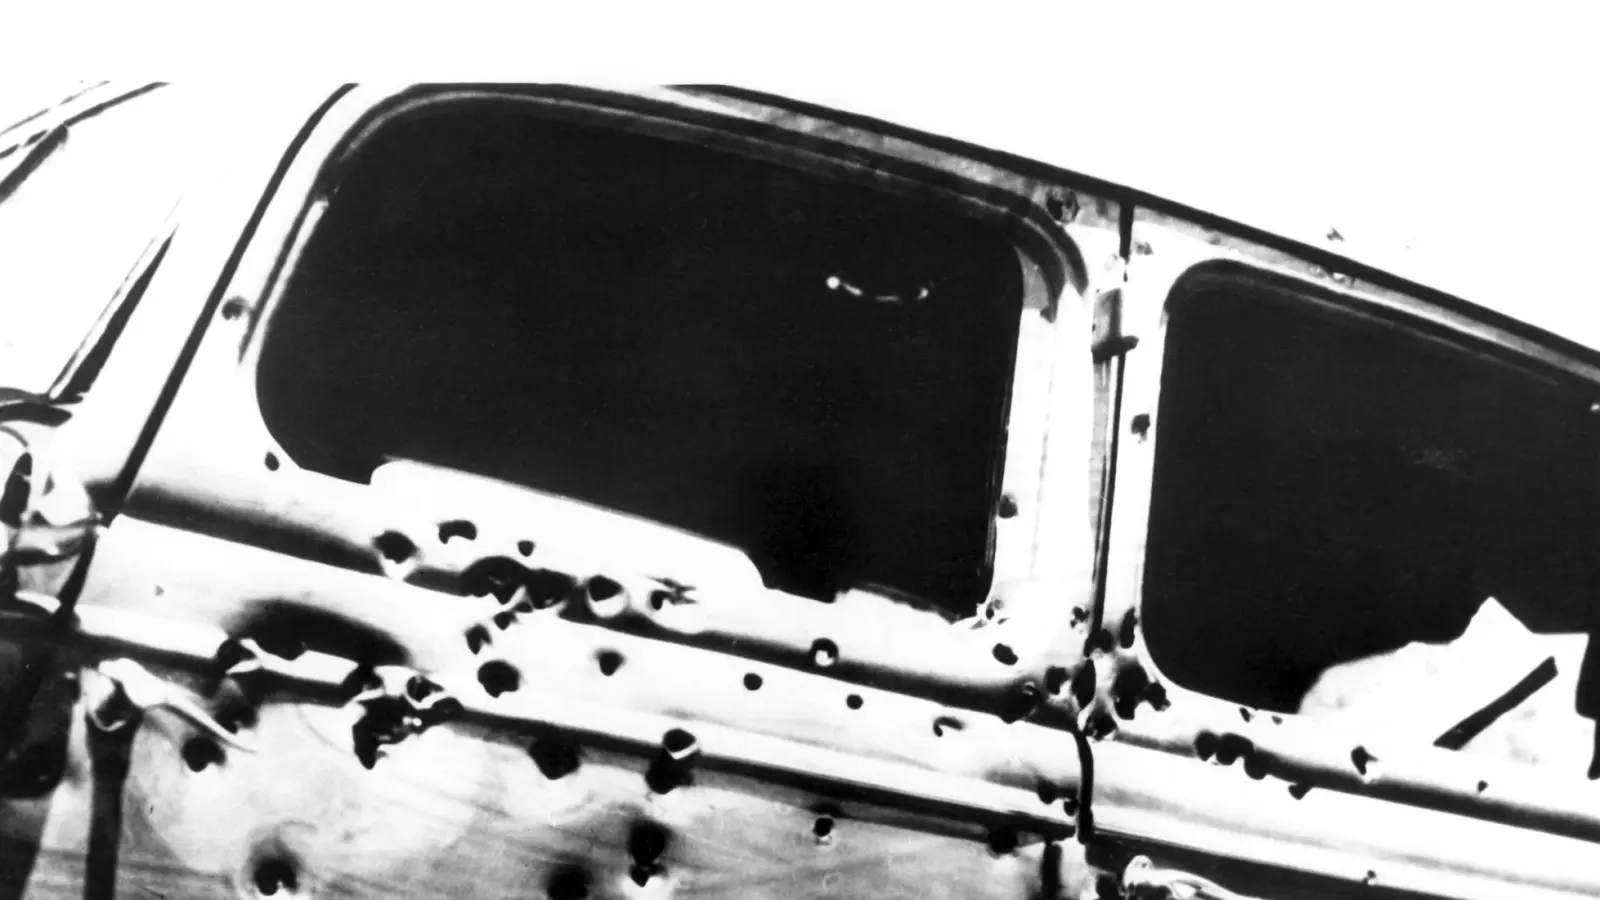 Mit weit über hundert Kugeln durchsiebte die Polizei das Fahrzeug, in dem Bonnie und Clyde starben. (Foto: UPI/dpa)